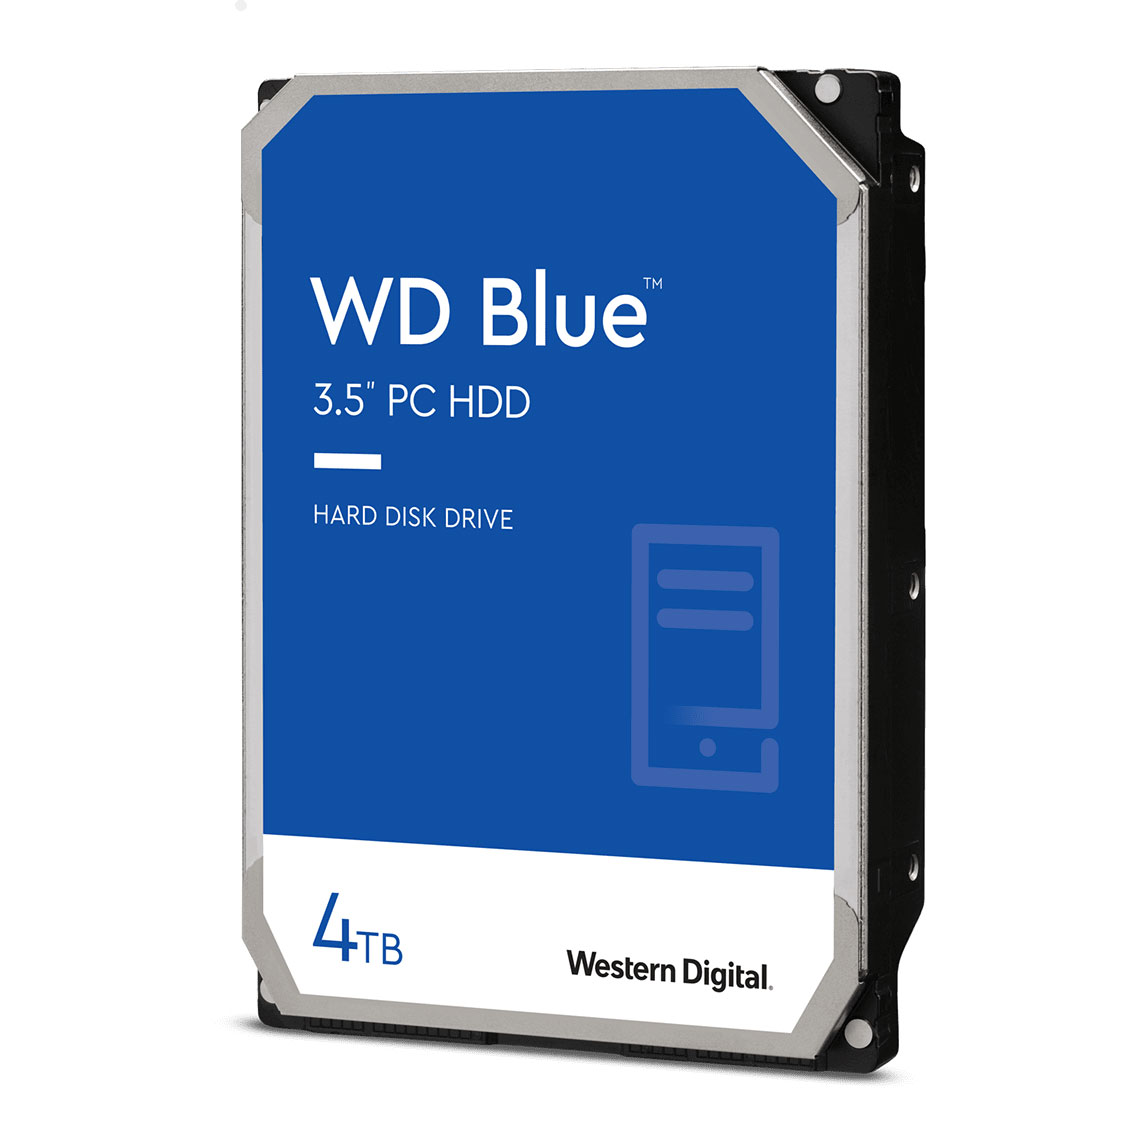 WD Blue 4TB 3.5" SATA 3 HDD/Hard Drive LN116264 - WD40EZAZ | SCAN UK